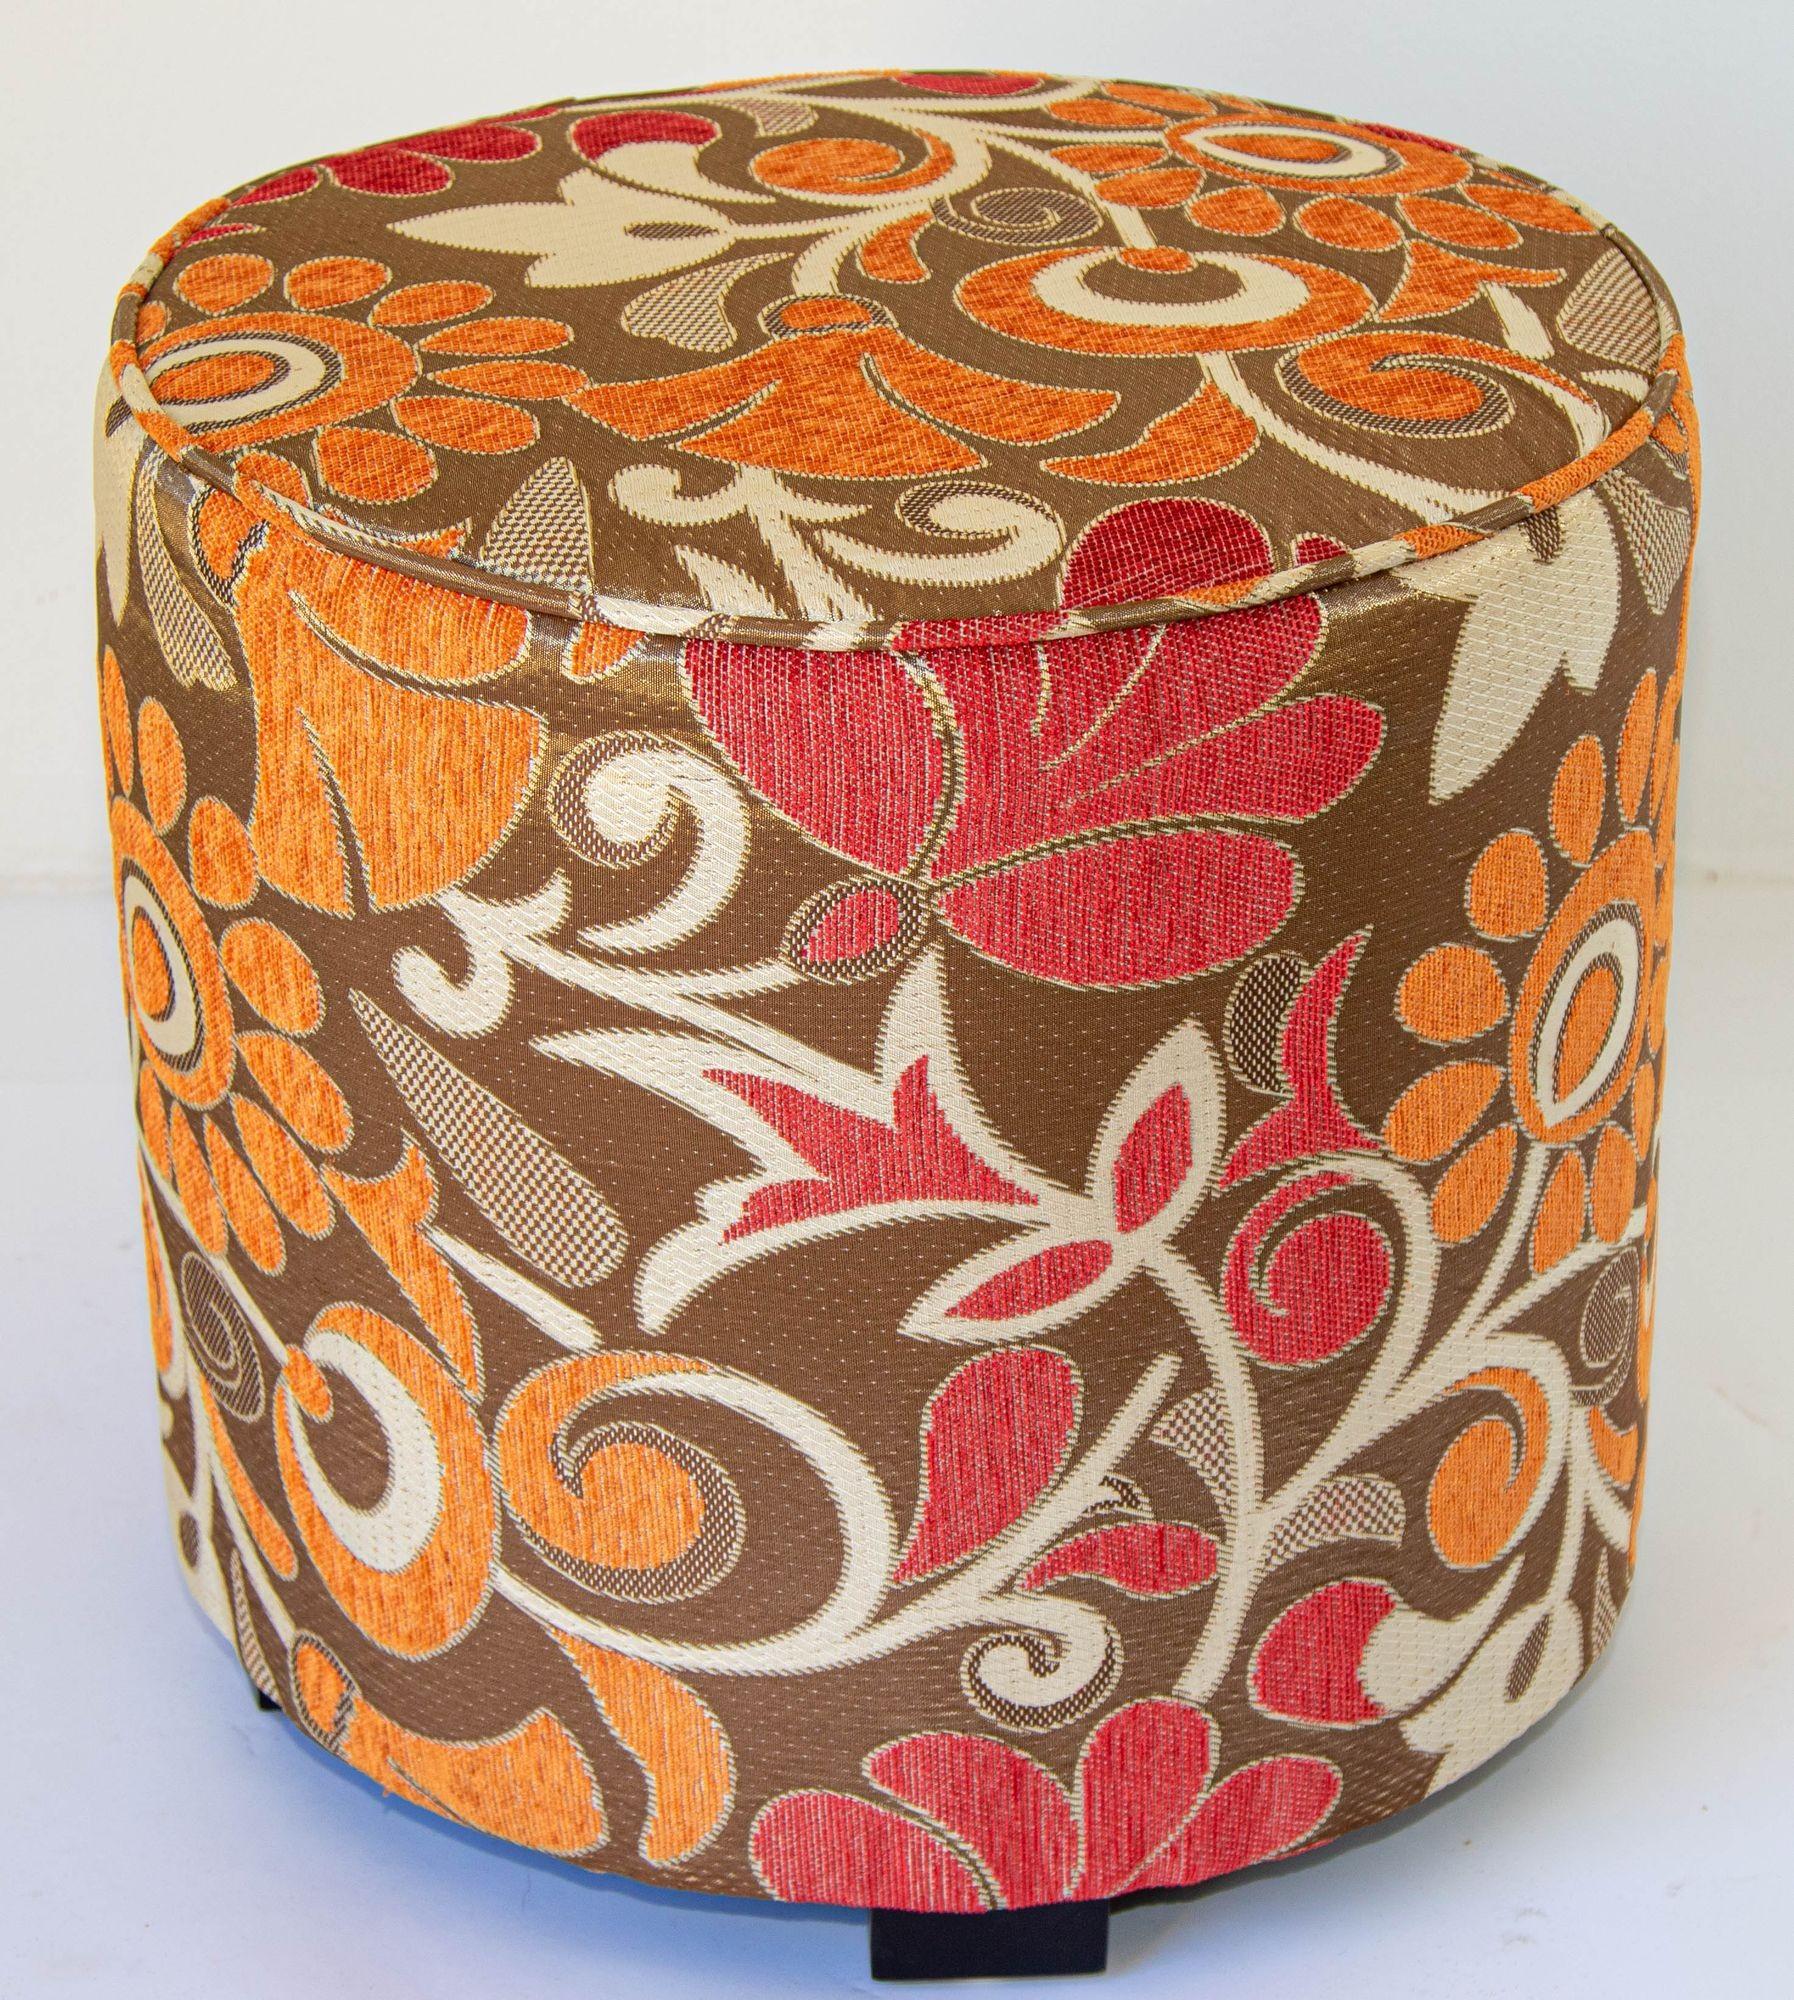 Tabourets cylindriques modernes vintage en bronze, rouge, blanc et tapisserie en tissu de velours psychédélique rouge dans le style des années 1970.
Paire de tabourets cylindriques post-modernes contemporains très décoratifs, tapissés de tissu